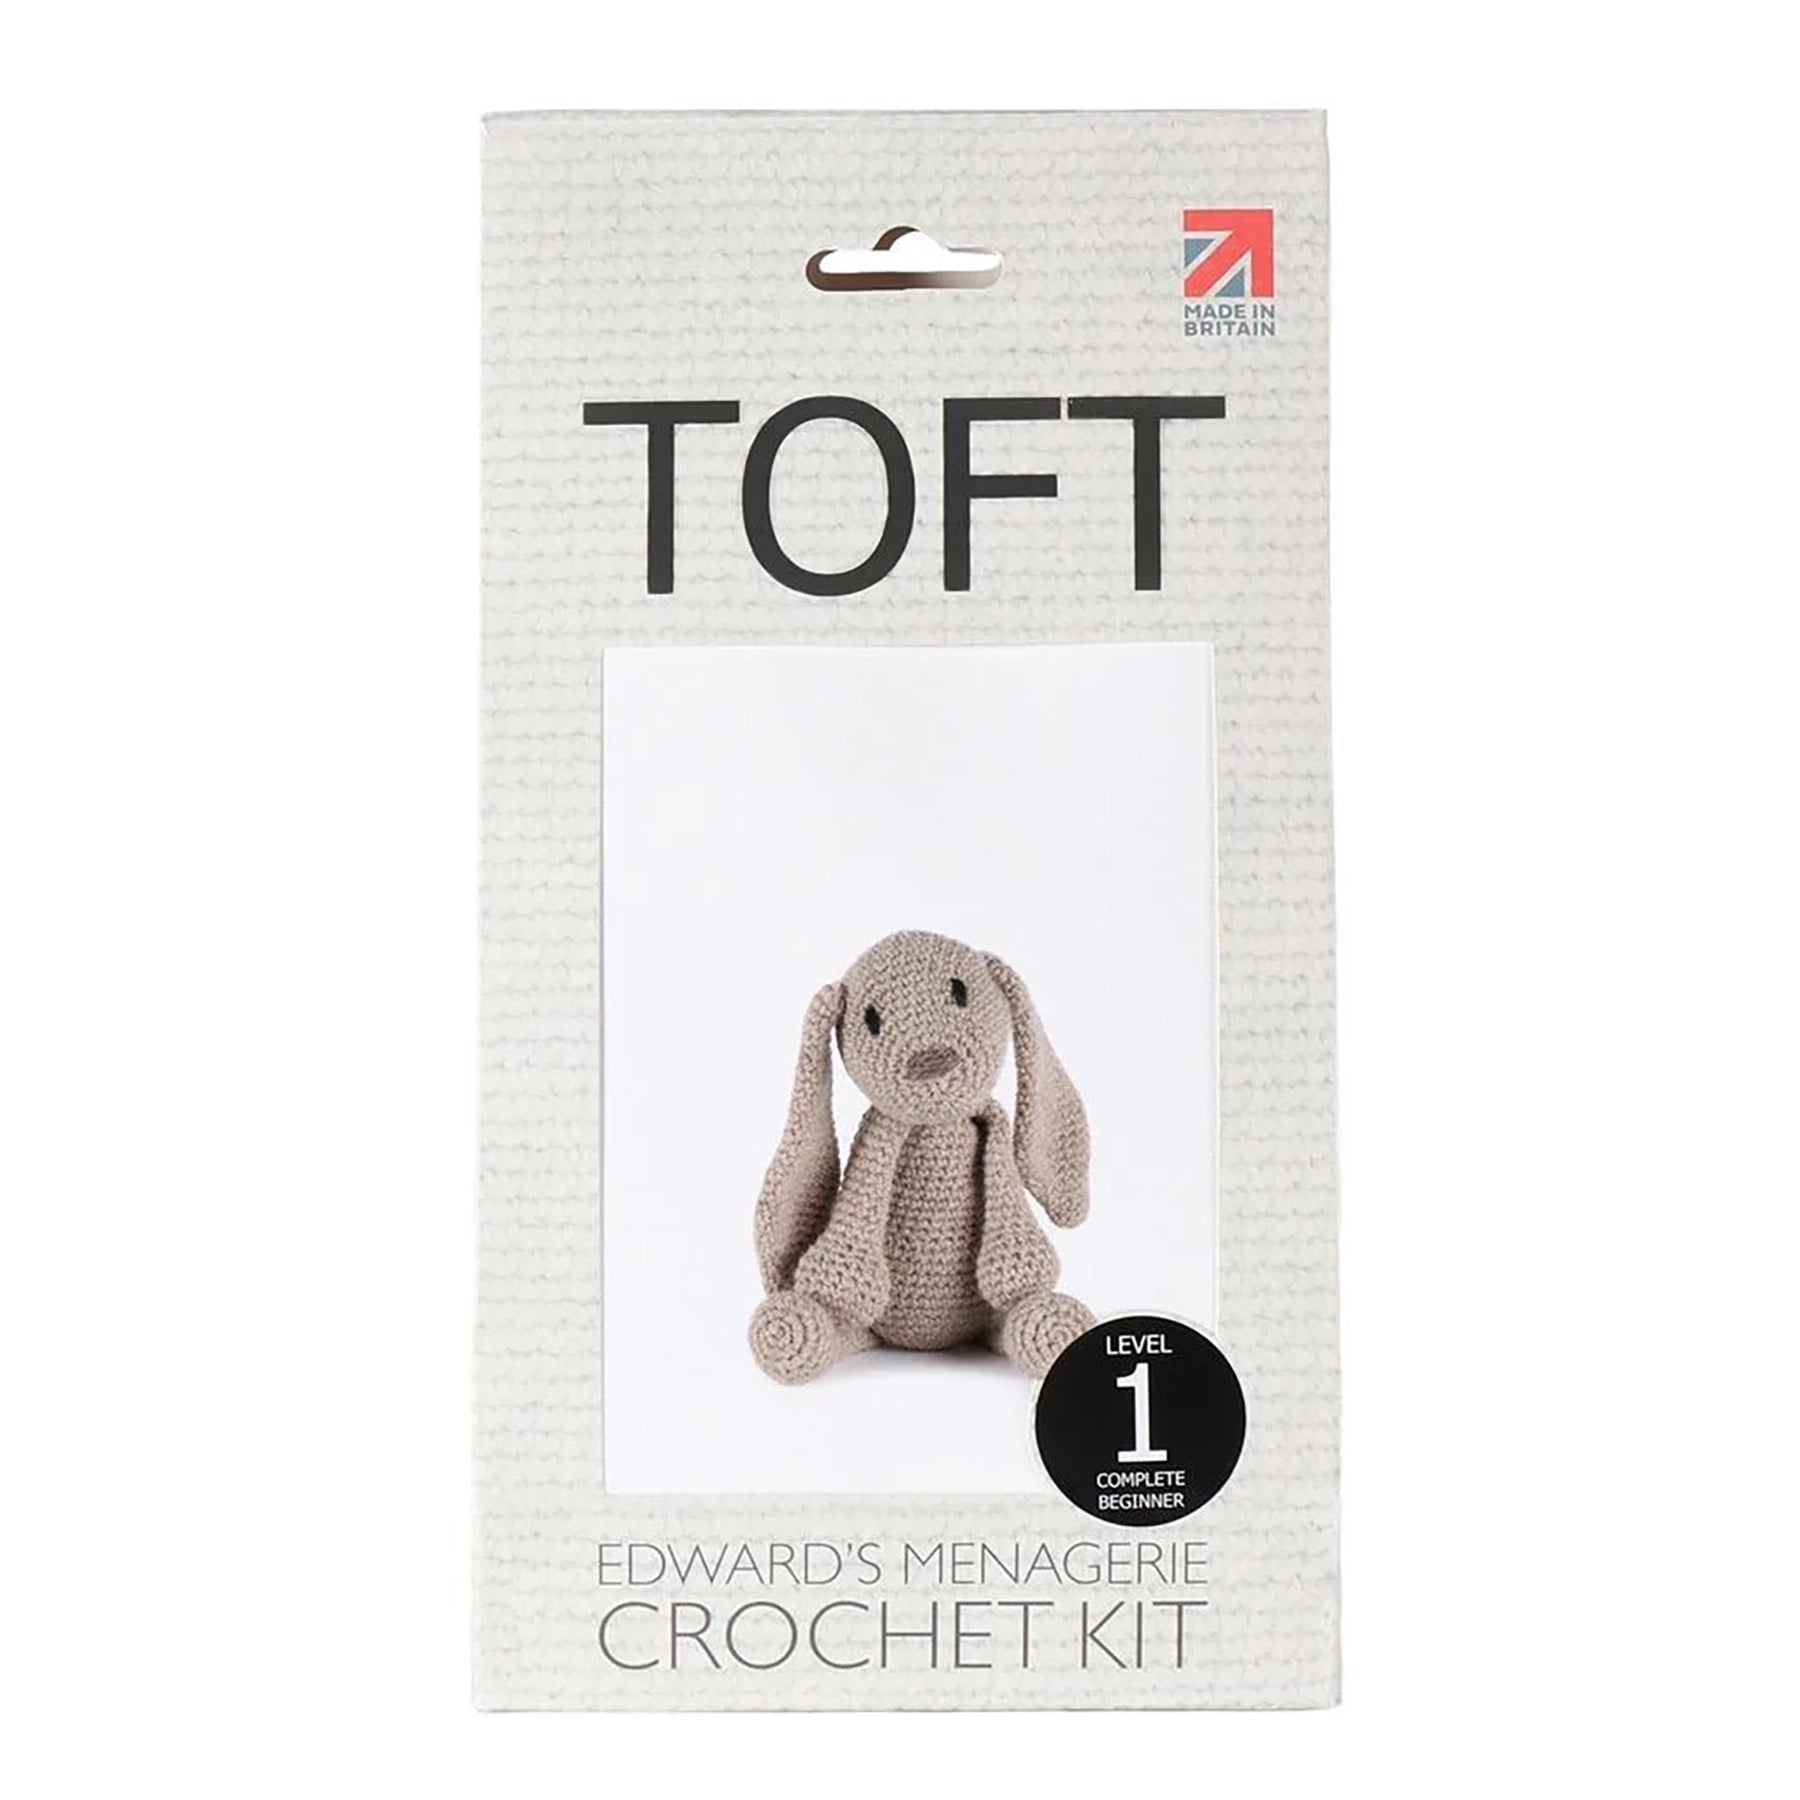 Toft Crochet Kit